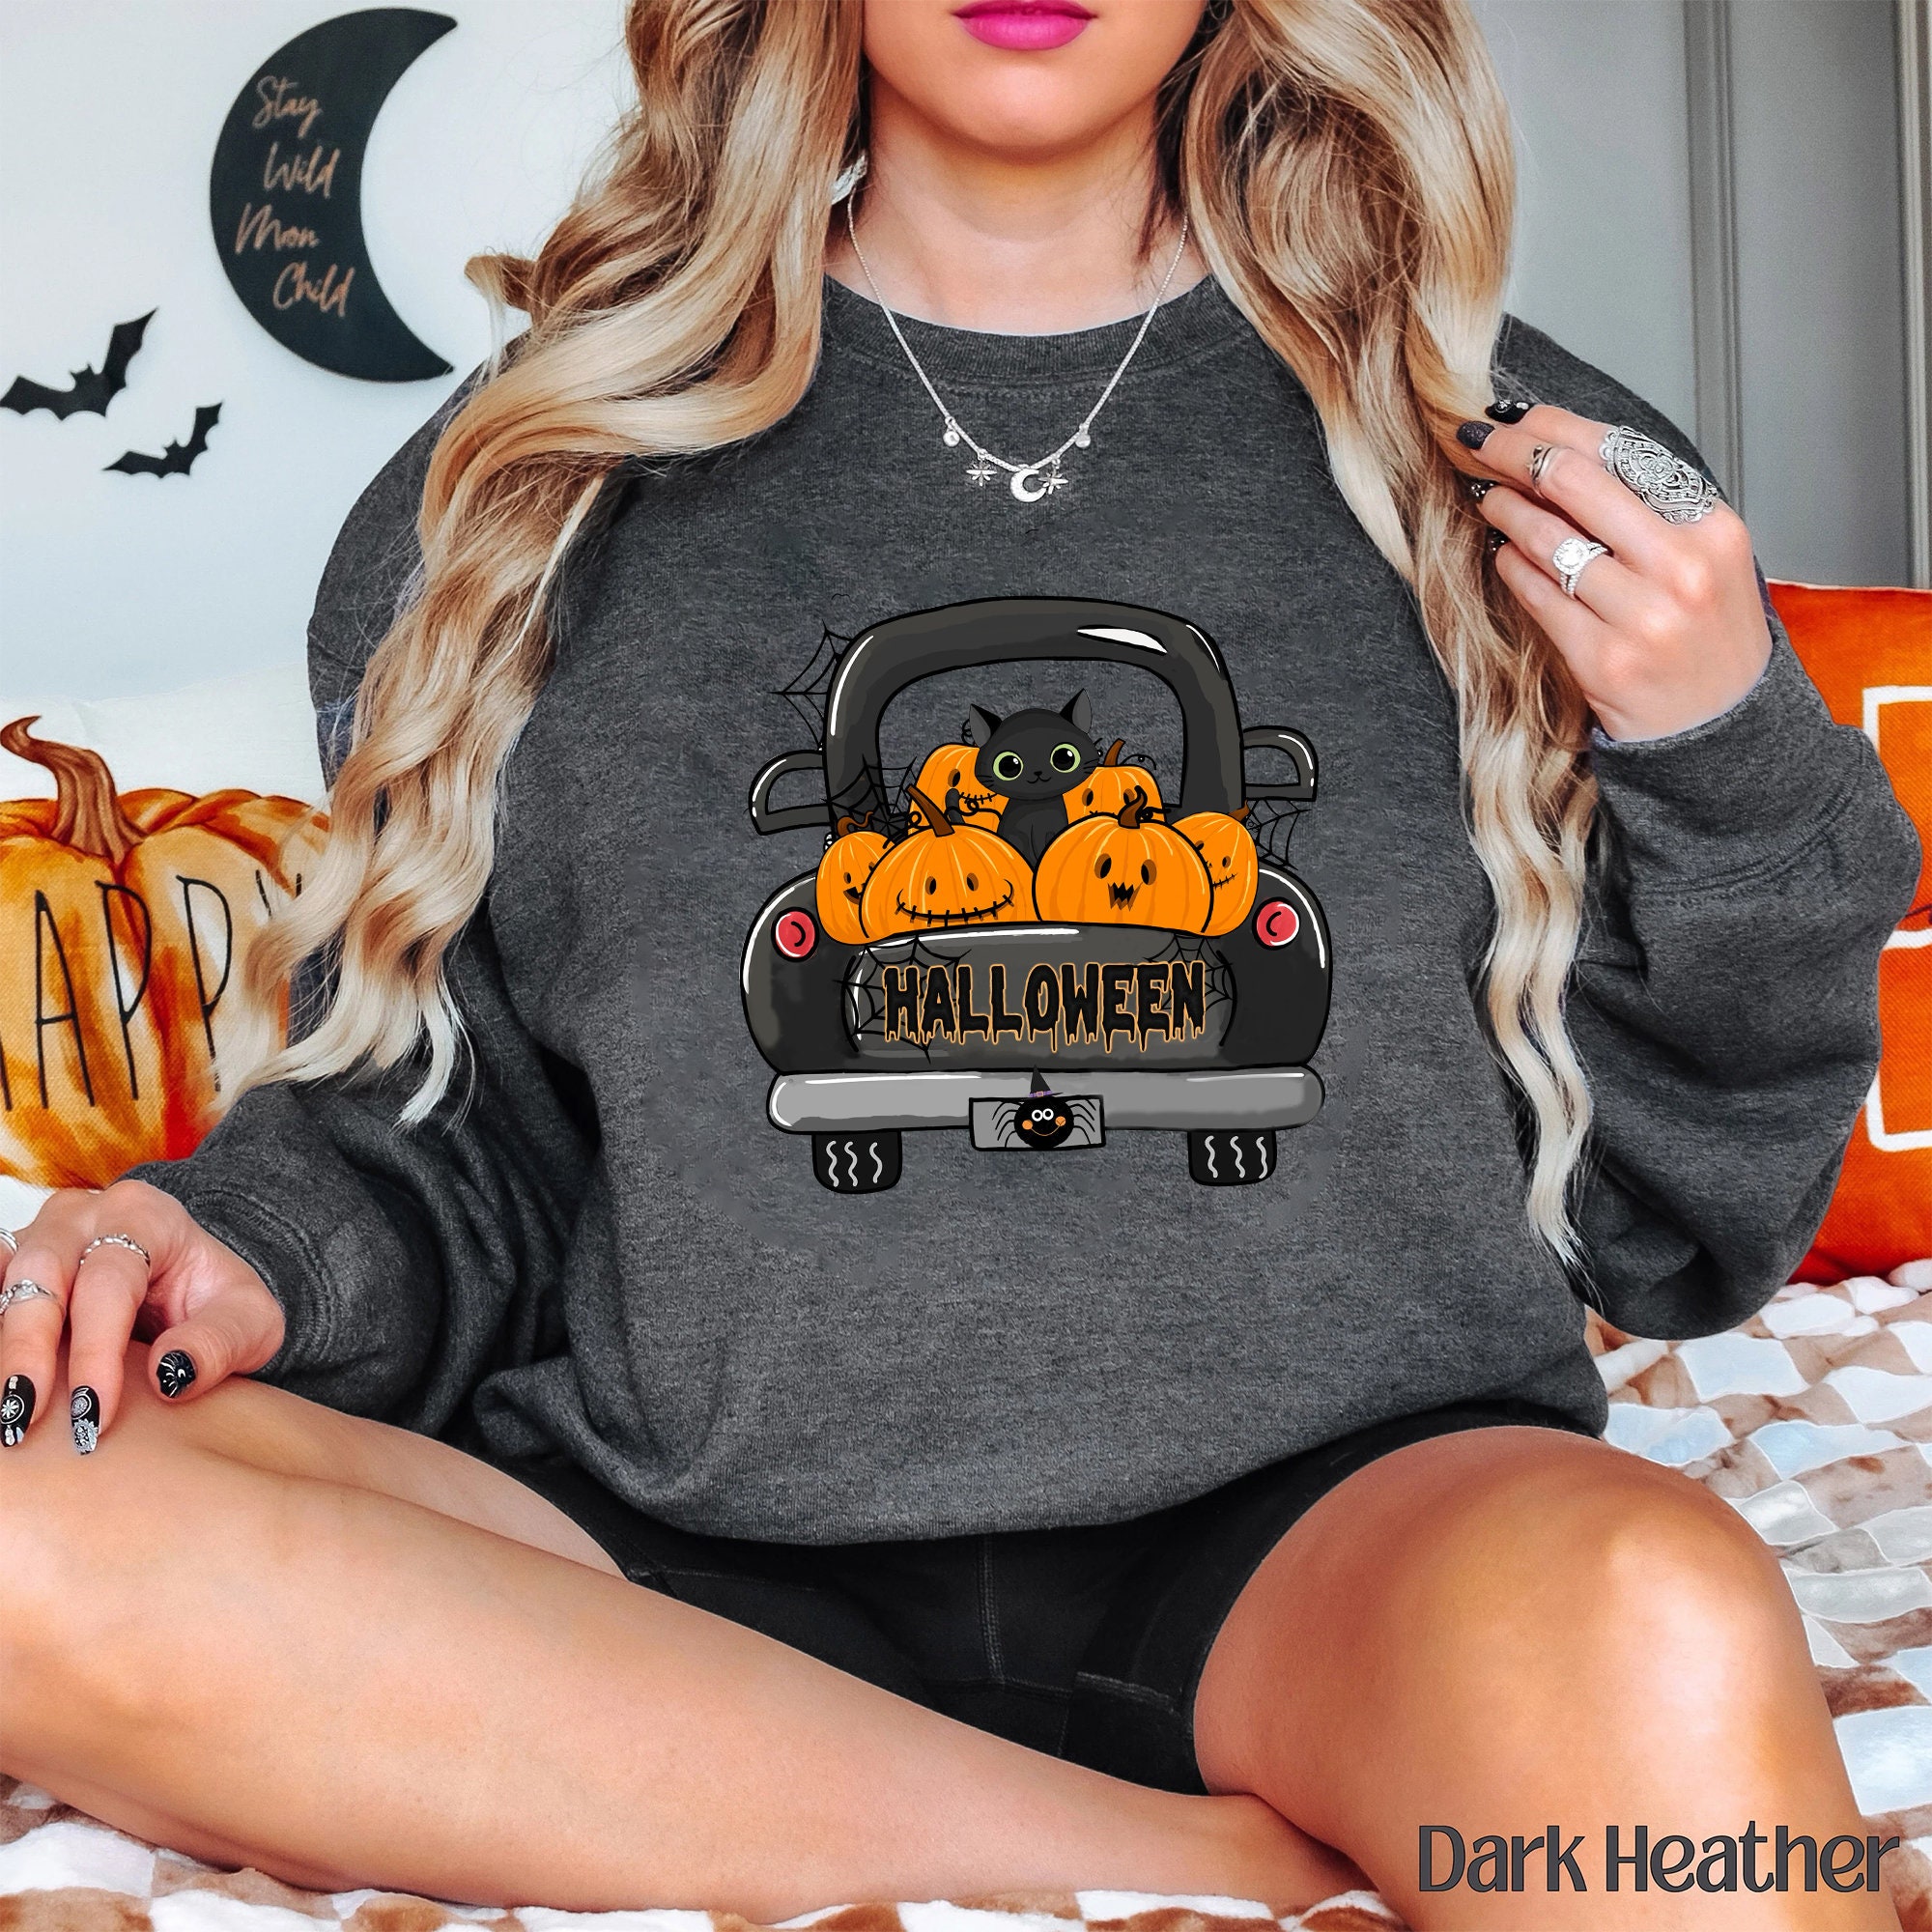 Discover Halloween Black Cat Sweatshirt, Halloween Sweatshirt,  Pumpkin Shirt, Black Cat Halloween Sweatshirt, Pumpkin and Black Cat Shirt